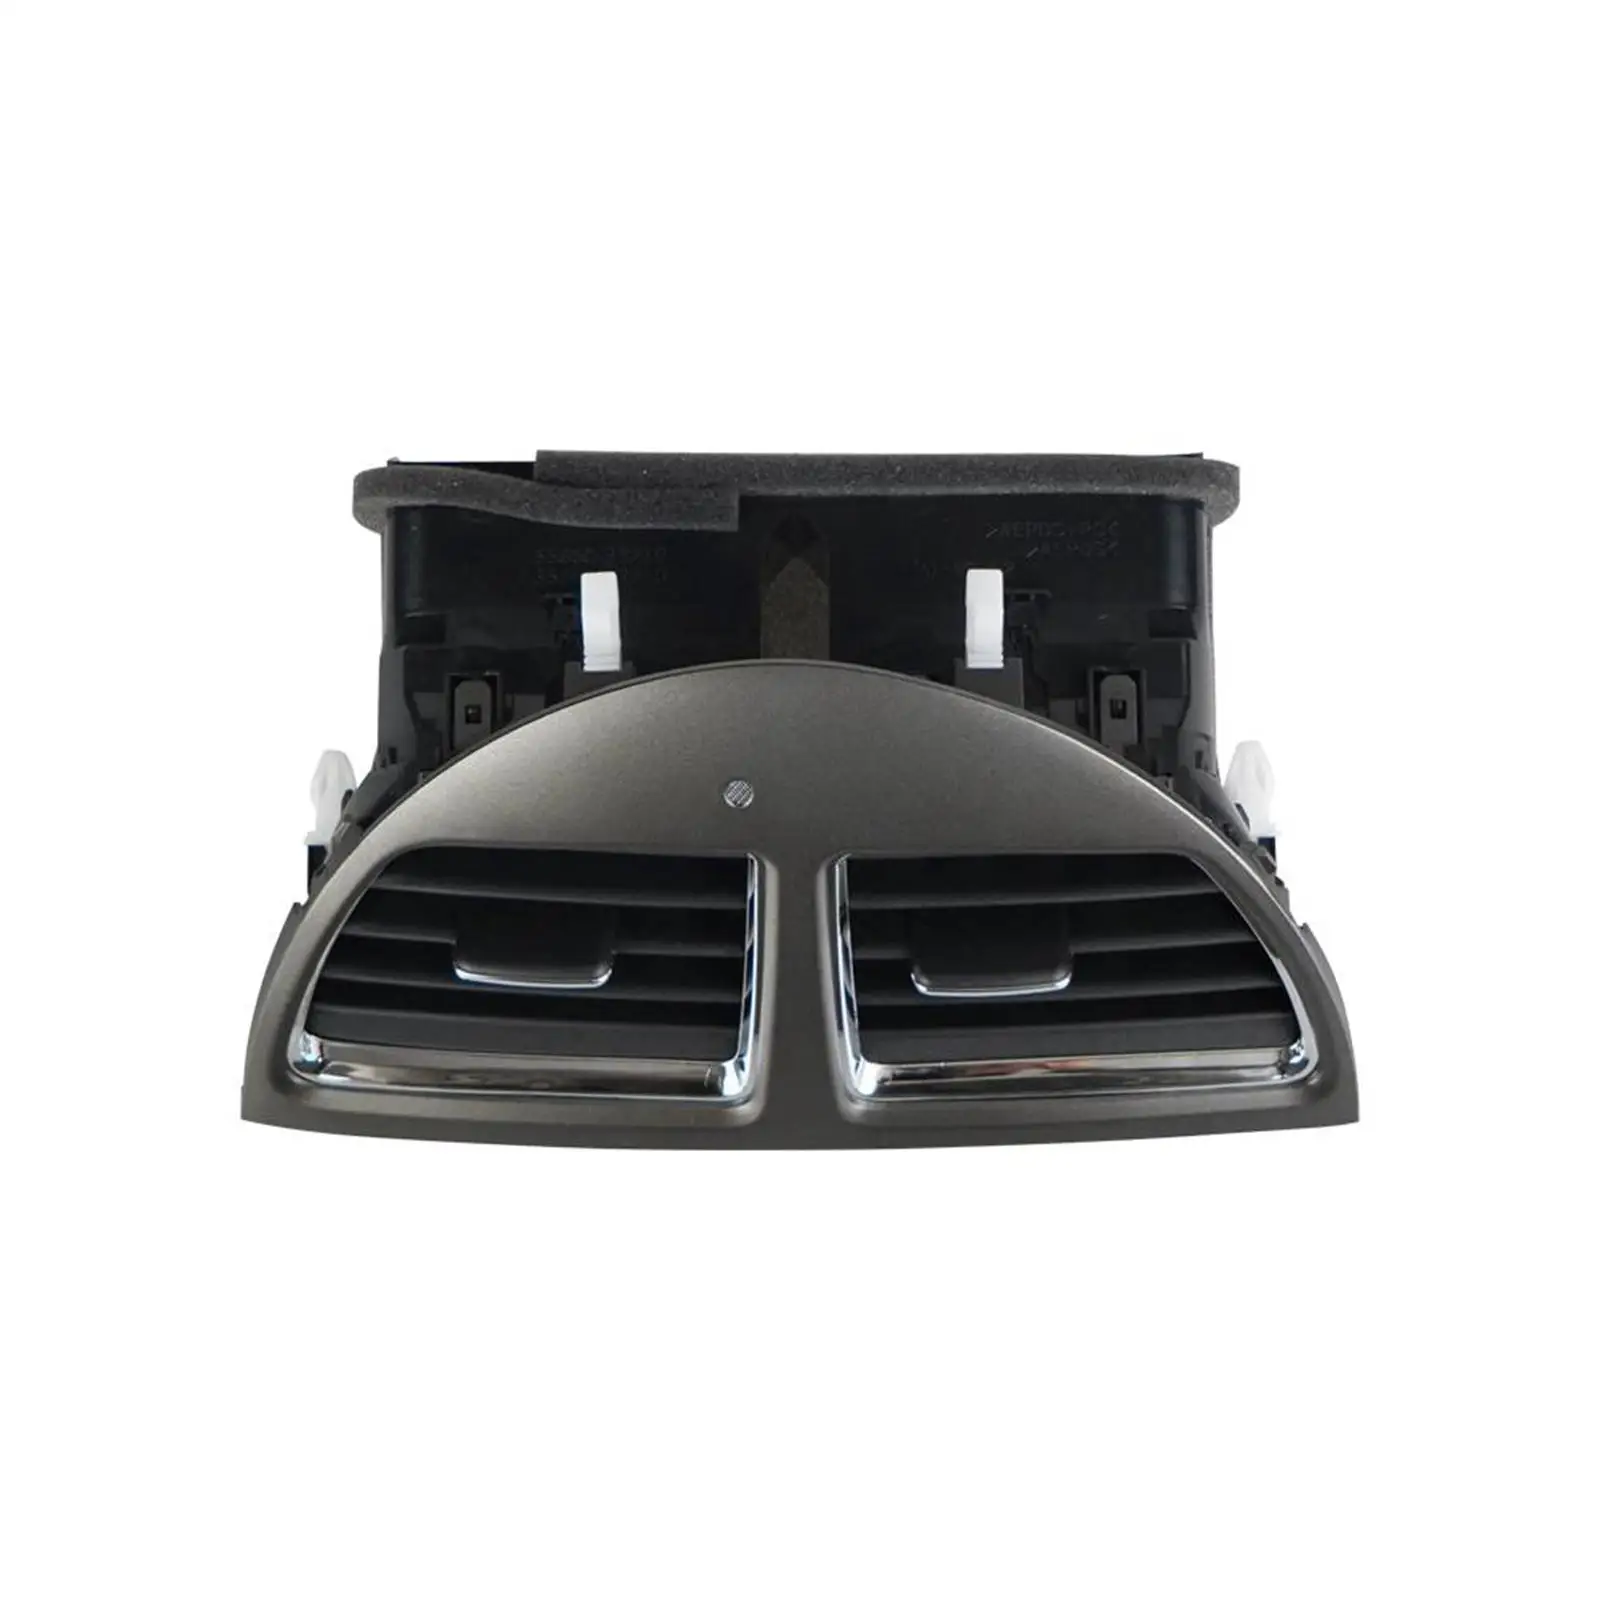 Car Center Dash A/C Outlet Air Vent Panel 55660-33900 Replace Parts High Performance for Lexus ES350 Automotive Accessories